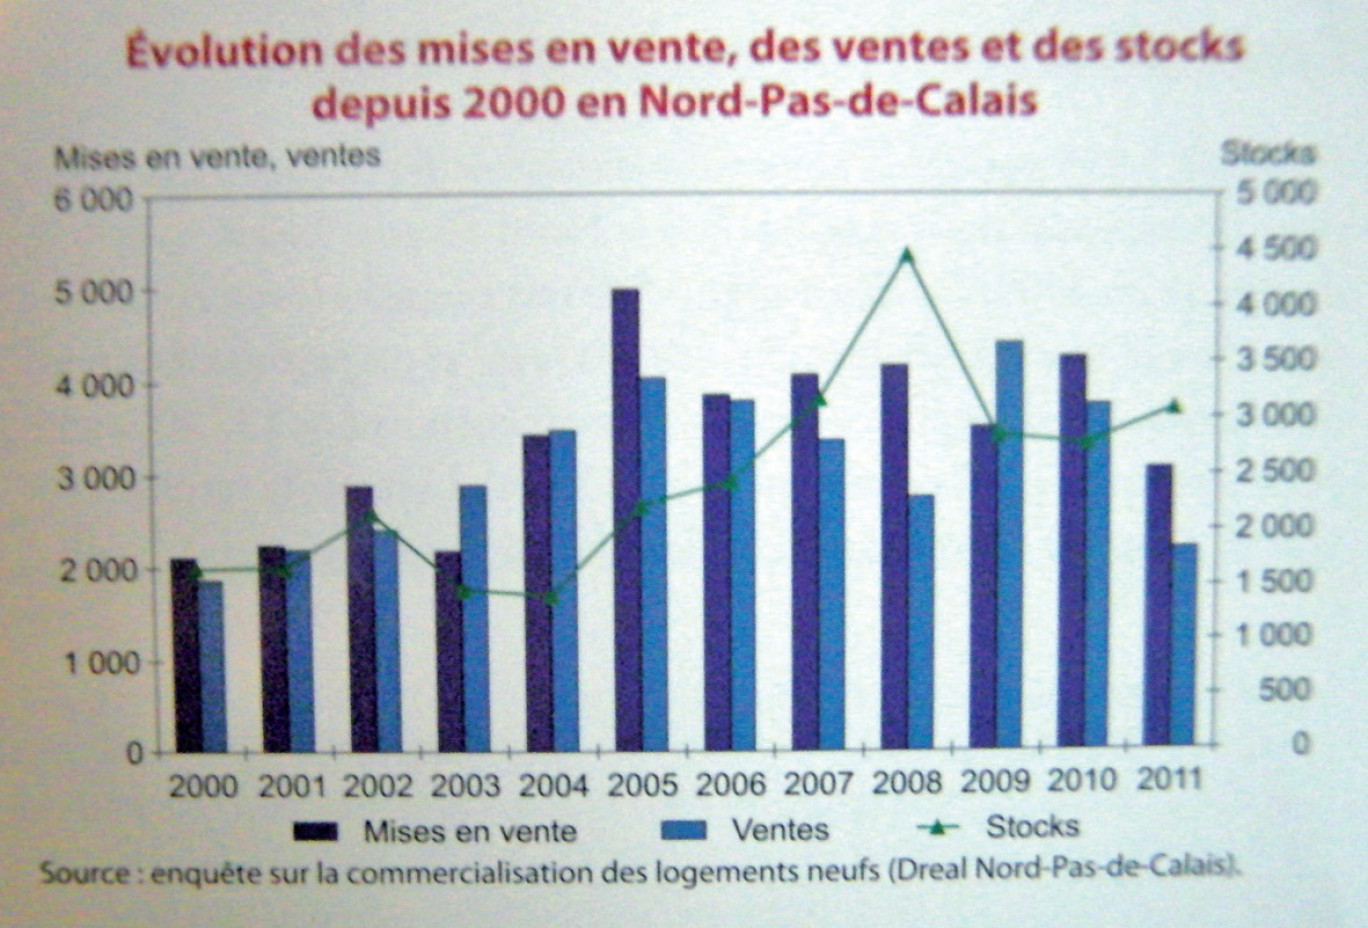 Evolution des mises en vente, des ventes et des stocks depuis 2000 en Nord-Pas-de-Calais.